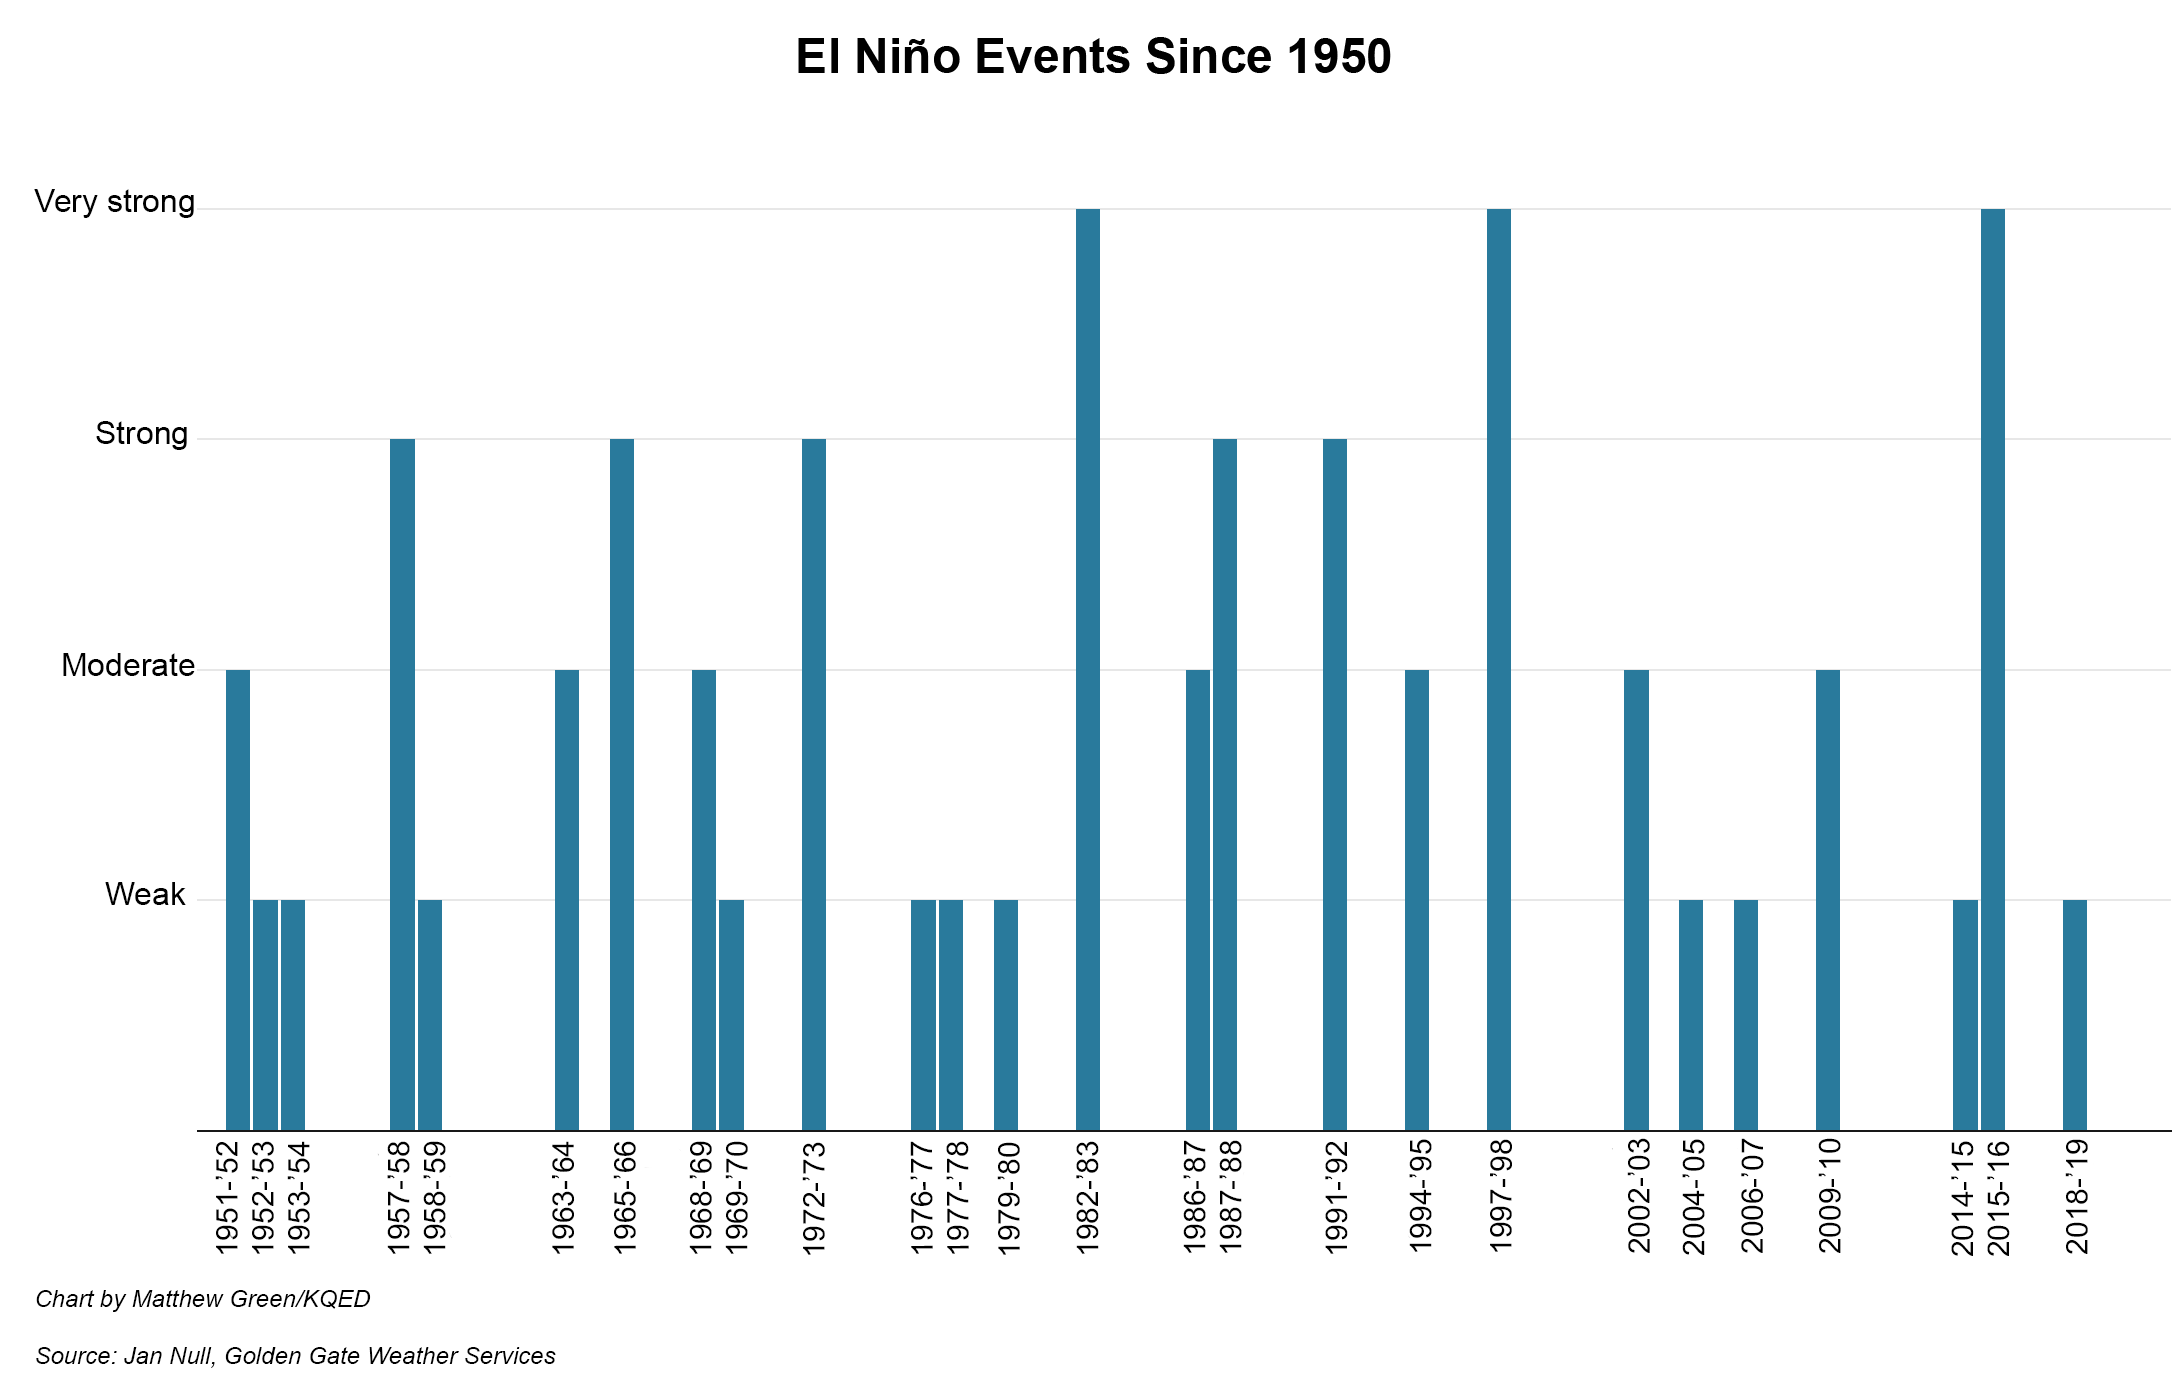 A vertical bar chart showing El Niño events since 1950.